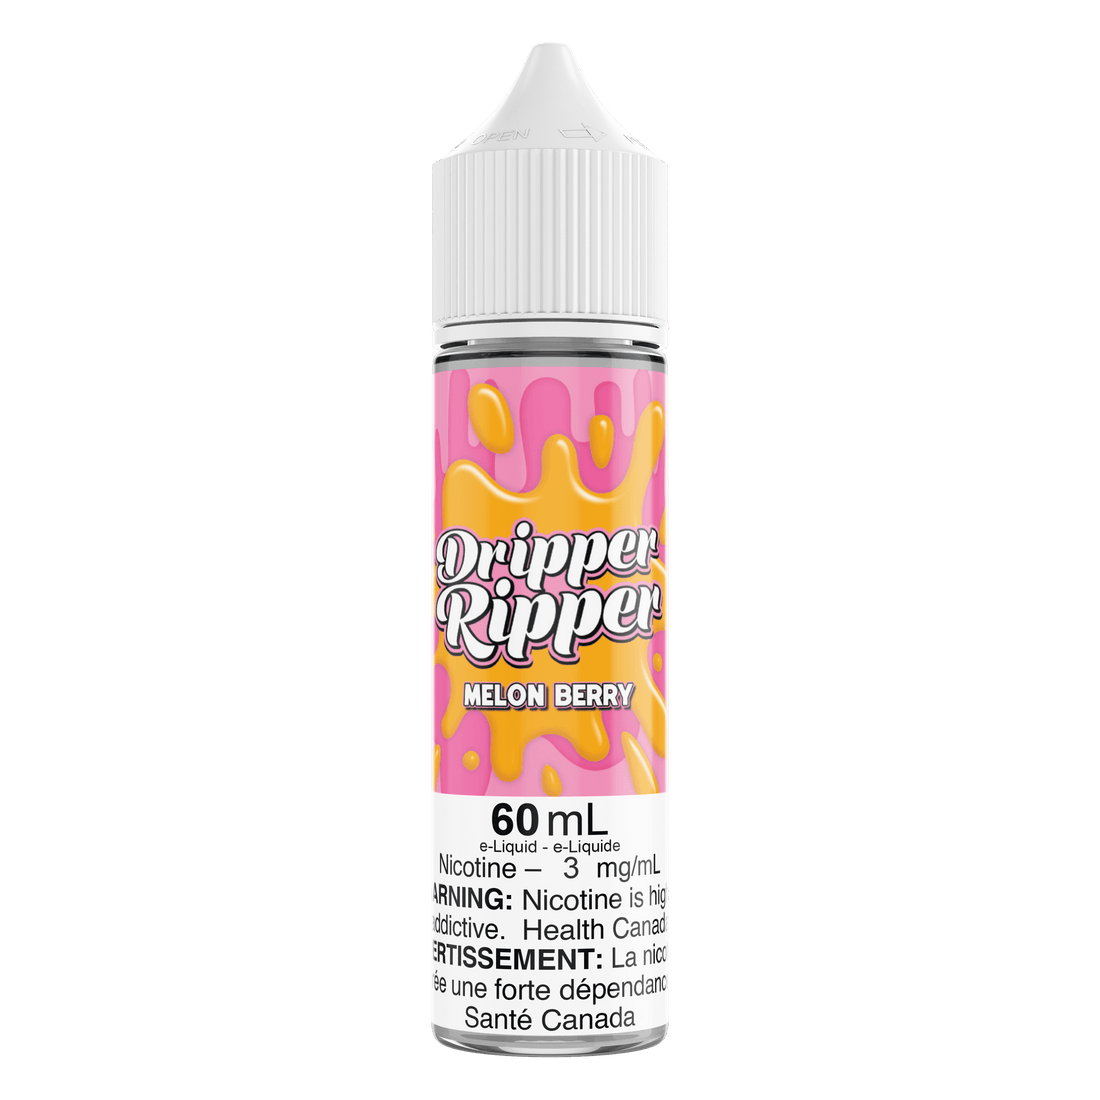 Dripper Ripper Melon Berry - Vapor Shoppe